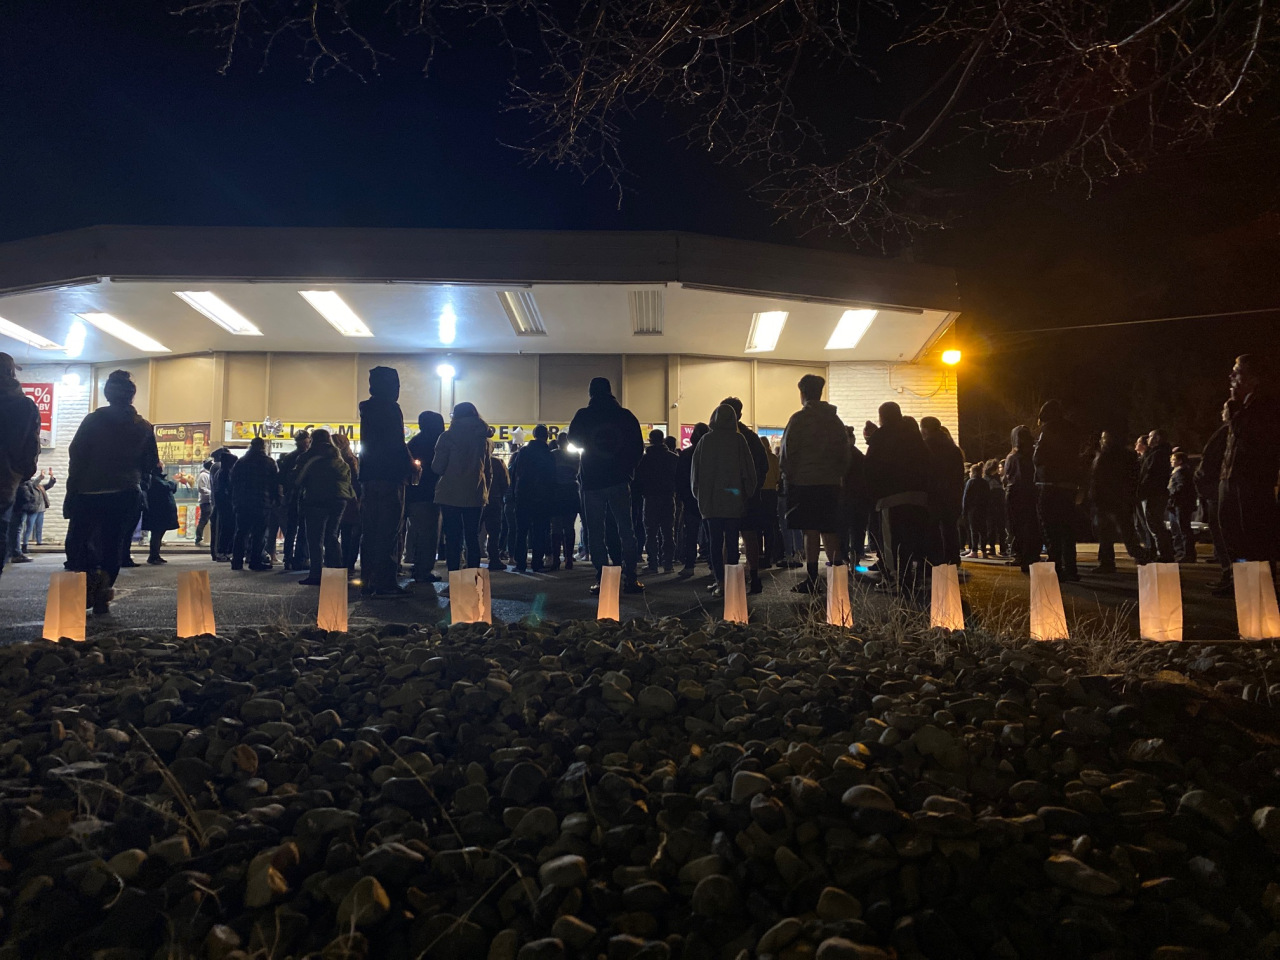 Candlelight vigil after Ogden shopkeeper was shot dead